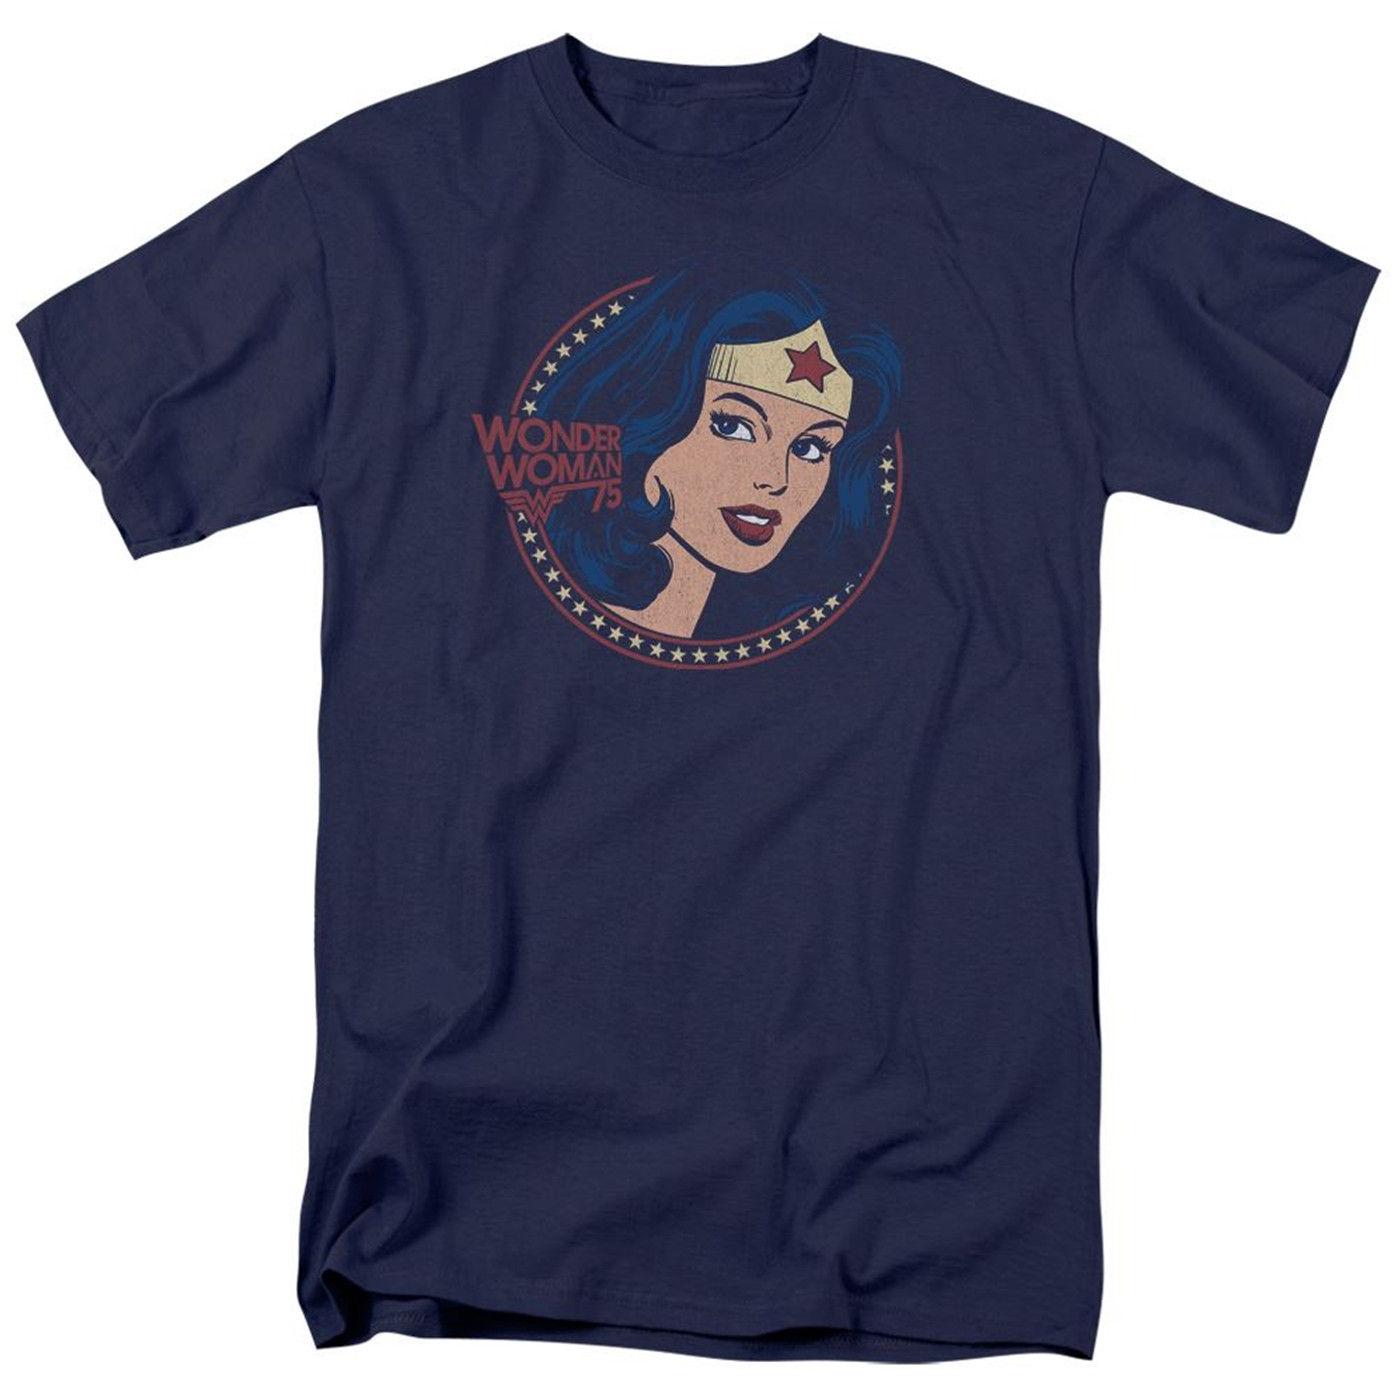 Wonder Woman 75 Portrait T-Shirt